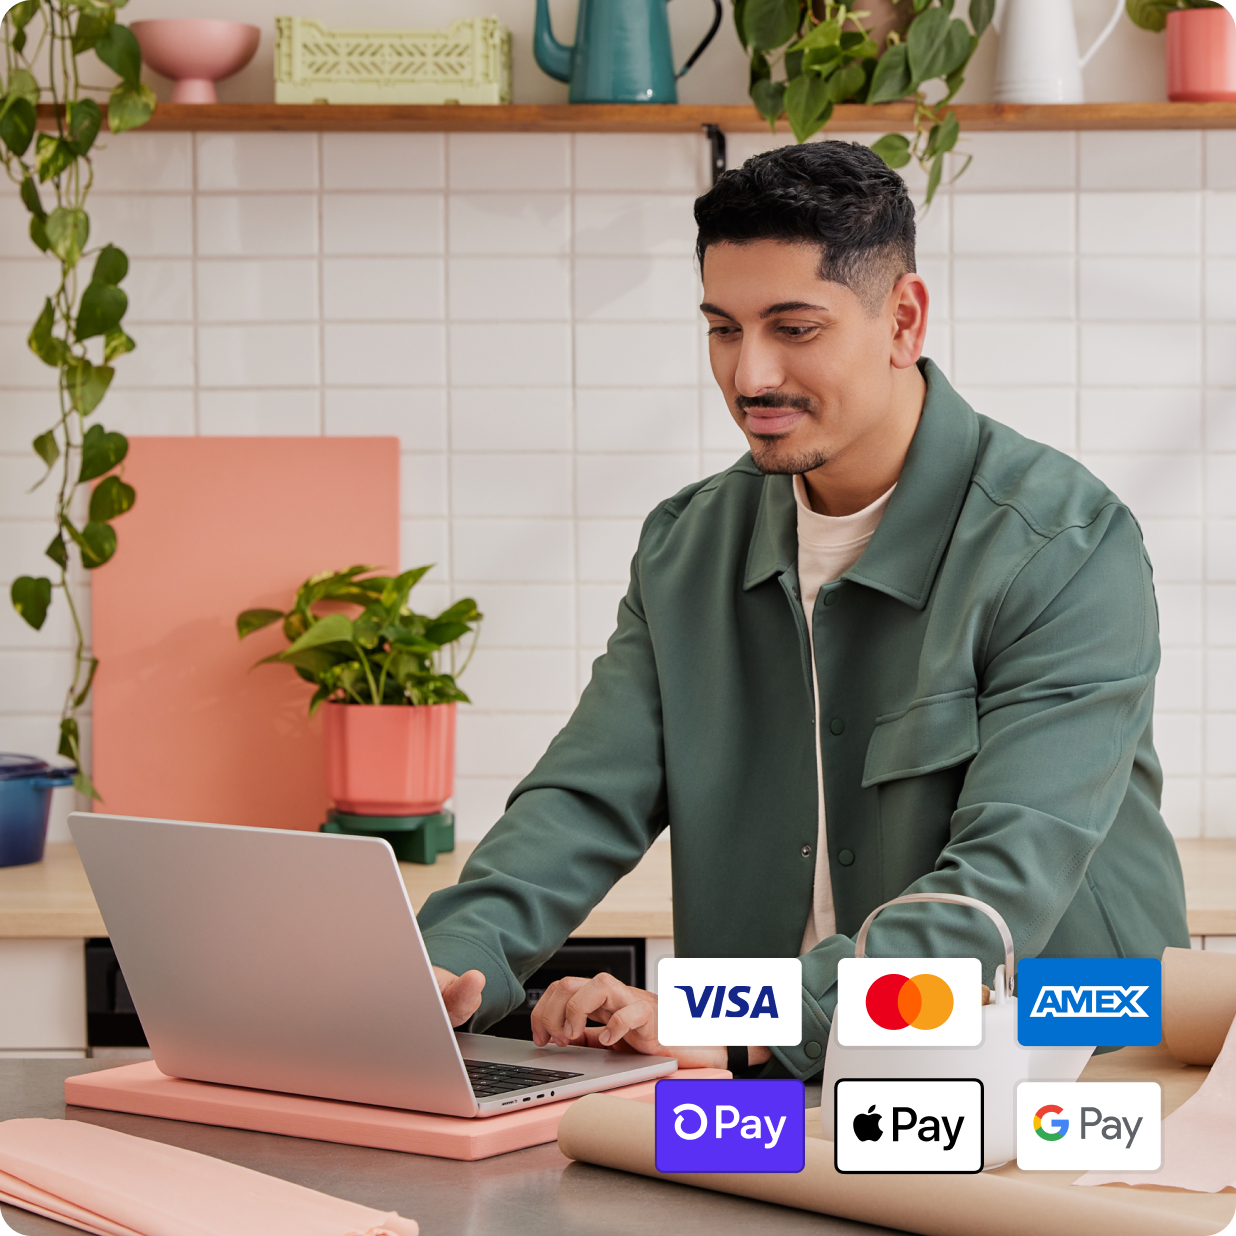 Client payant en magasin sur un ordinateur portable avec Visa, Mastercard, American Express, Shop Pay, Apple Pay, Google Pay, etc.